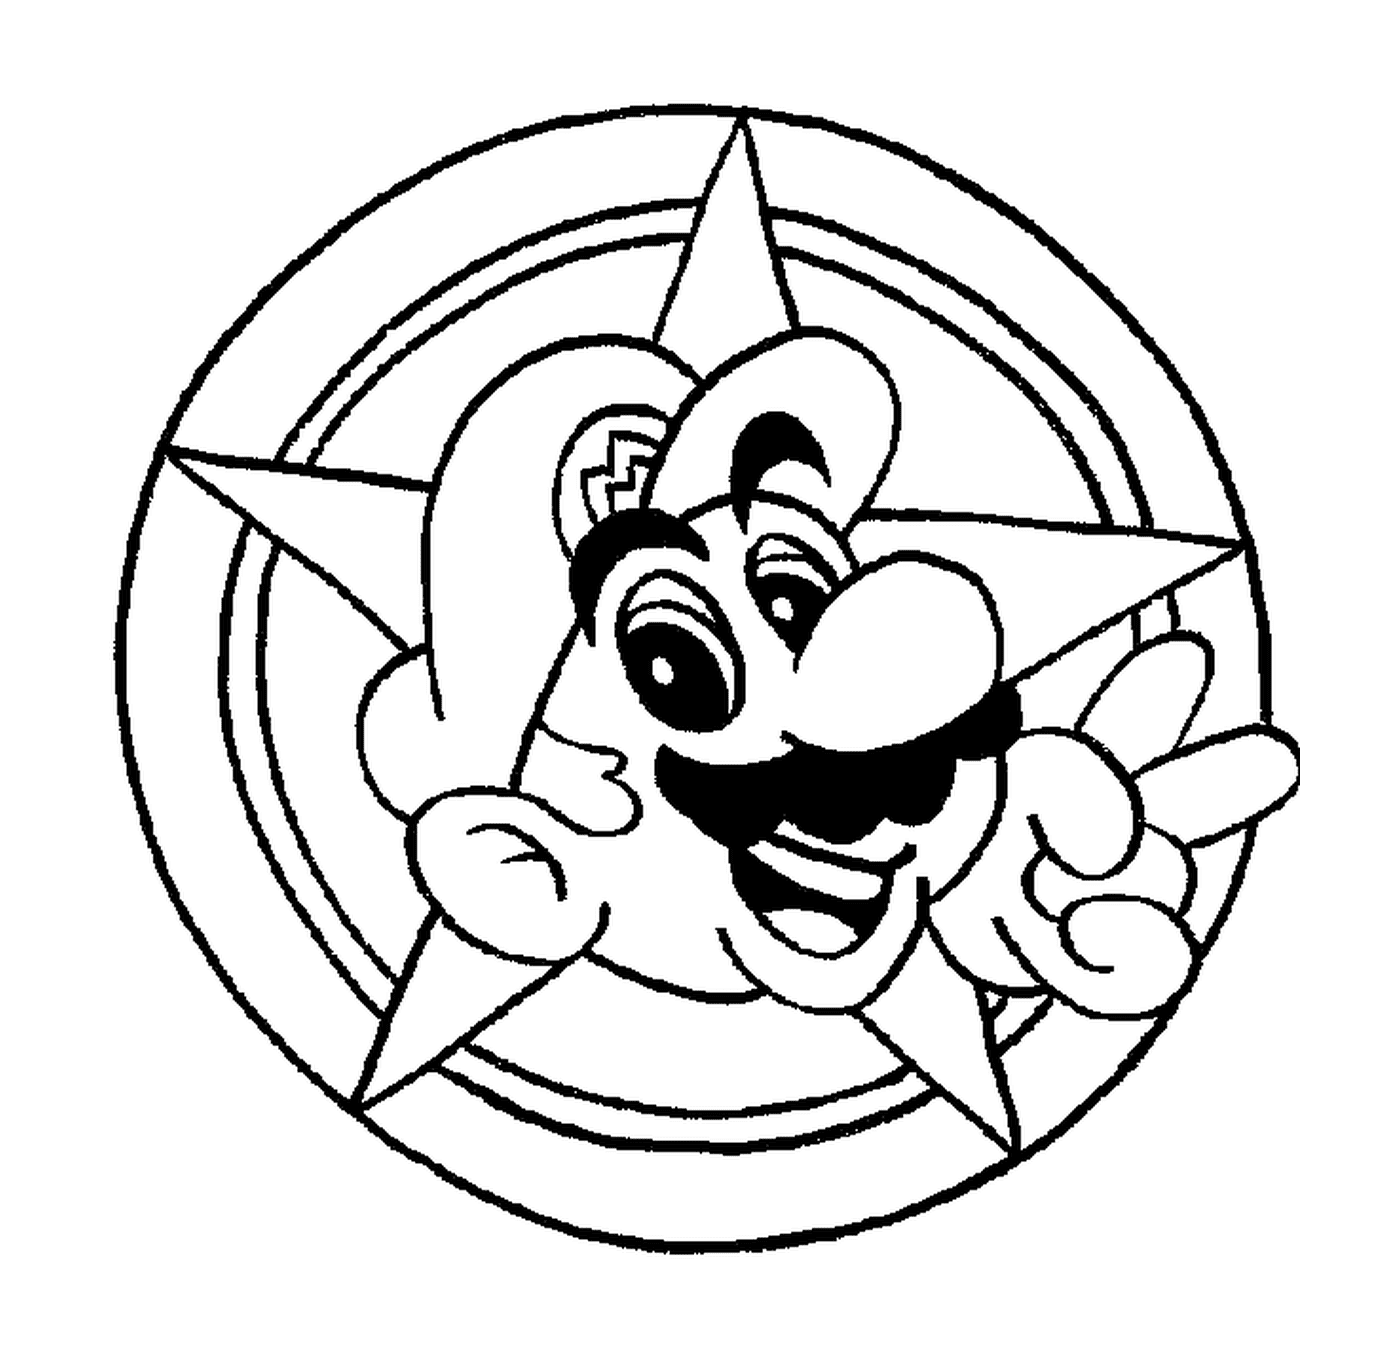 coloriage tete de Mario dans un cercle